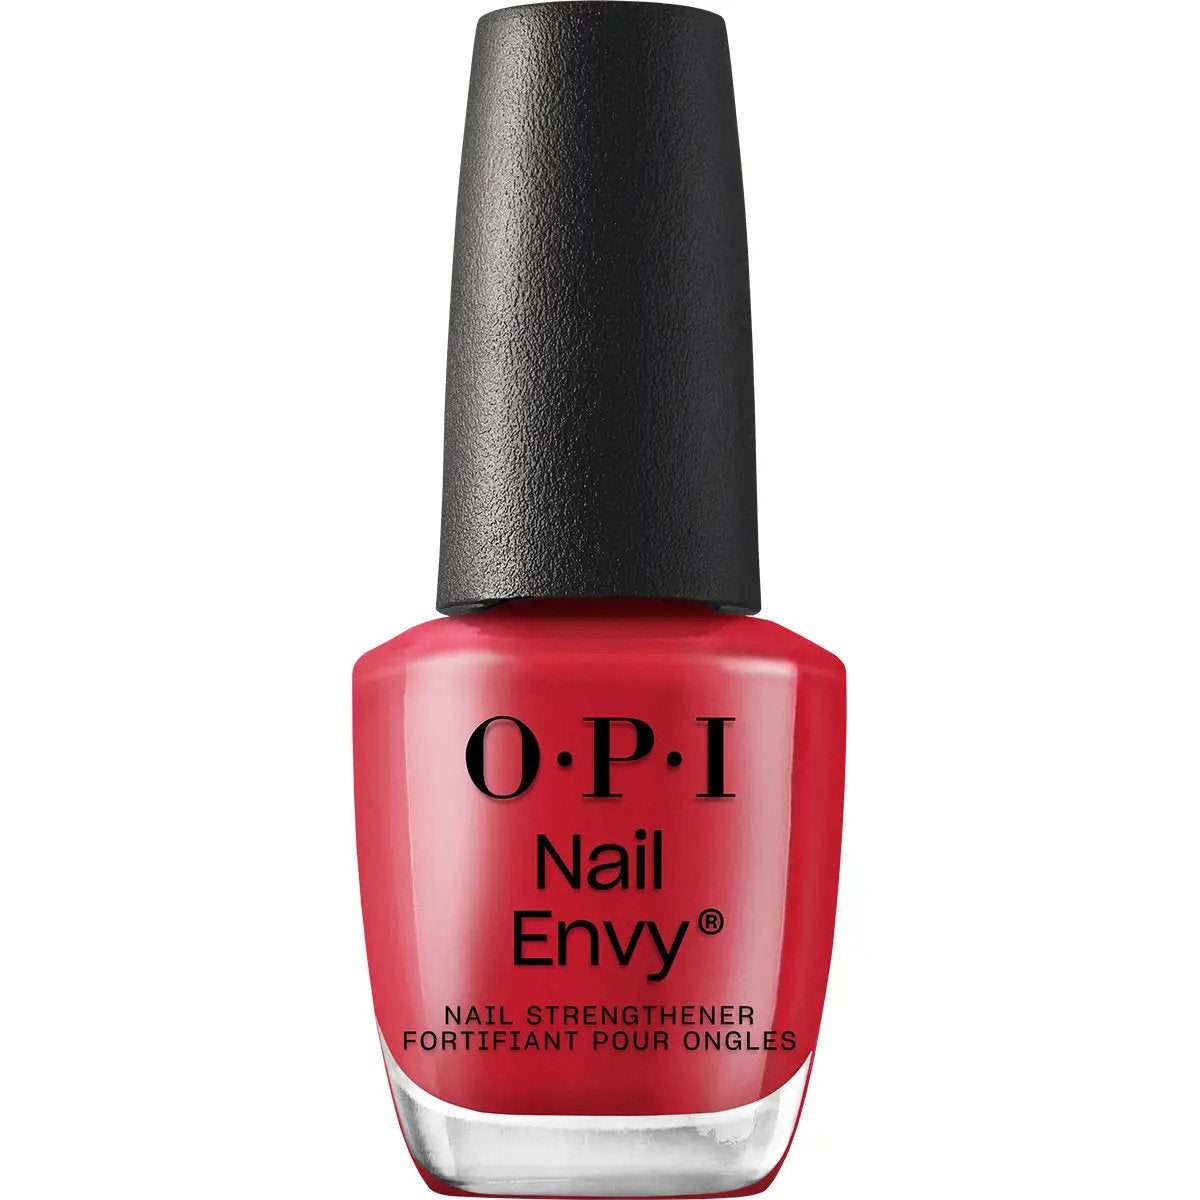 OPI Nail Envy 15mlBig Apple Red